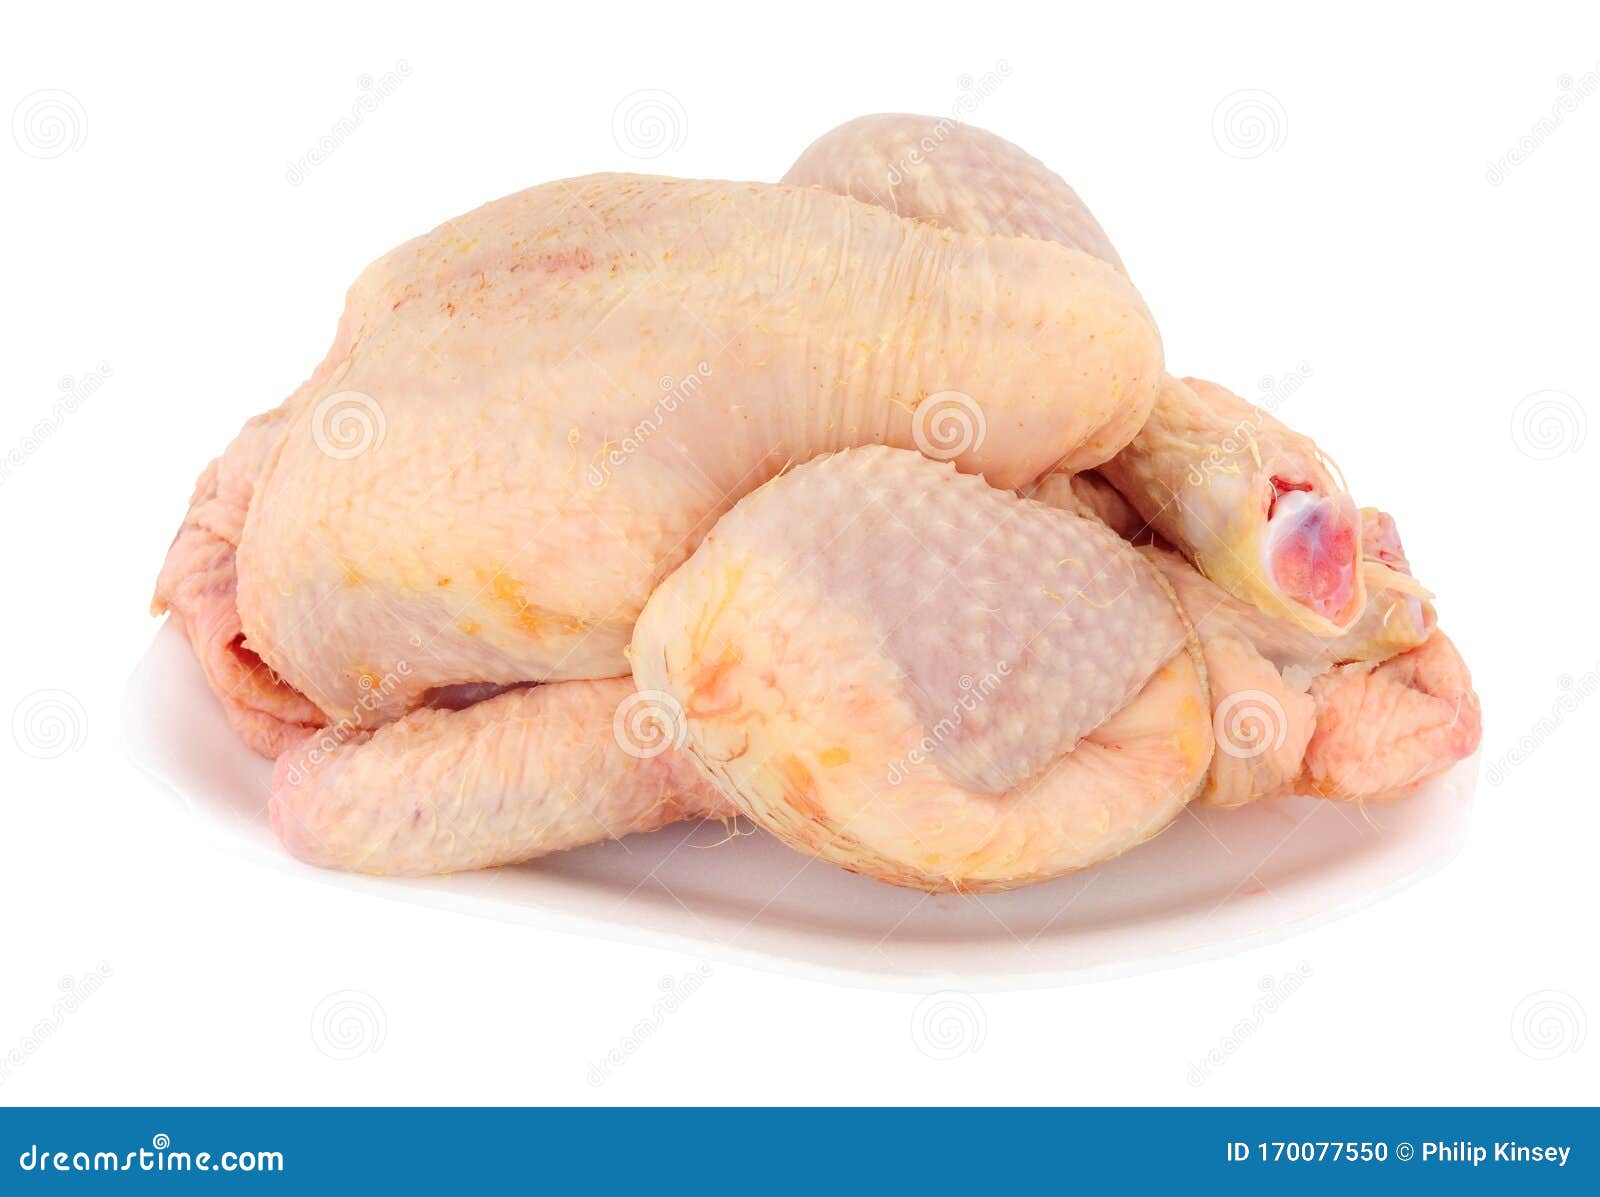 fresh raw poussin chicken